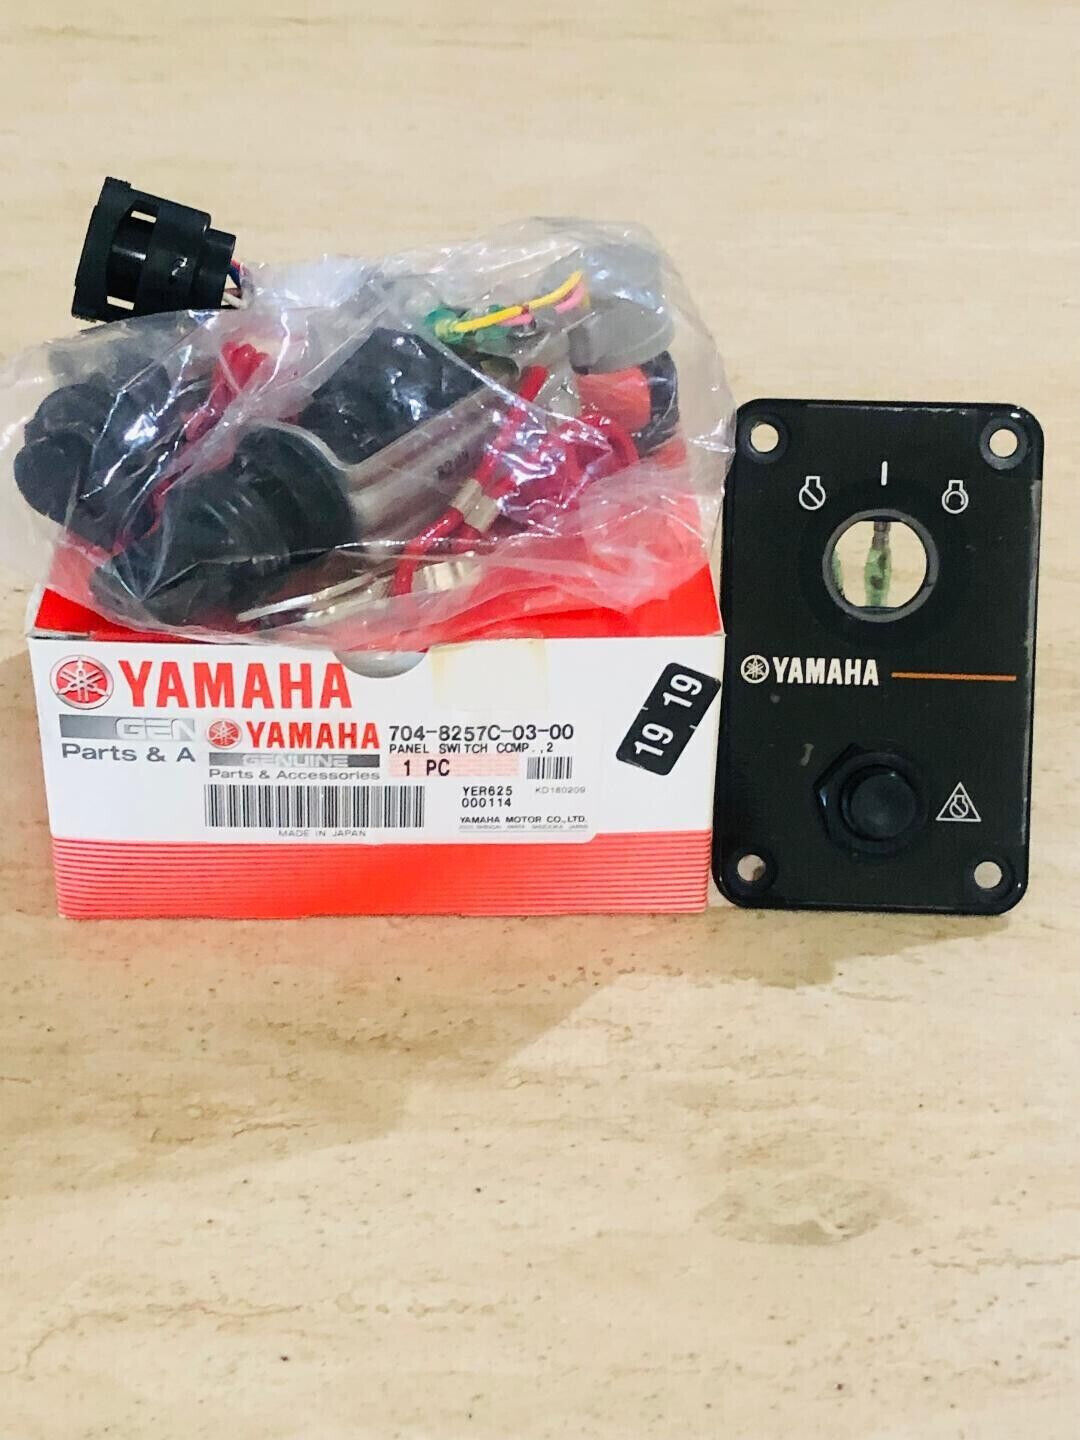 Yamaha OEM Single Engine Key Switch Assembly Yamaha 704-8257C-03-00